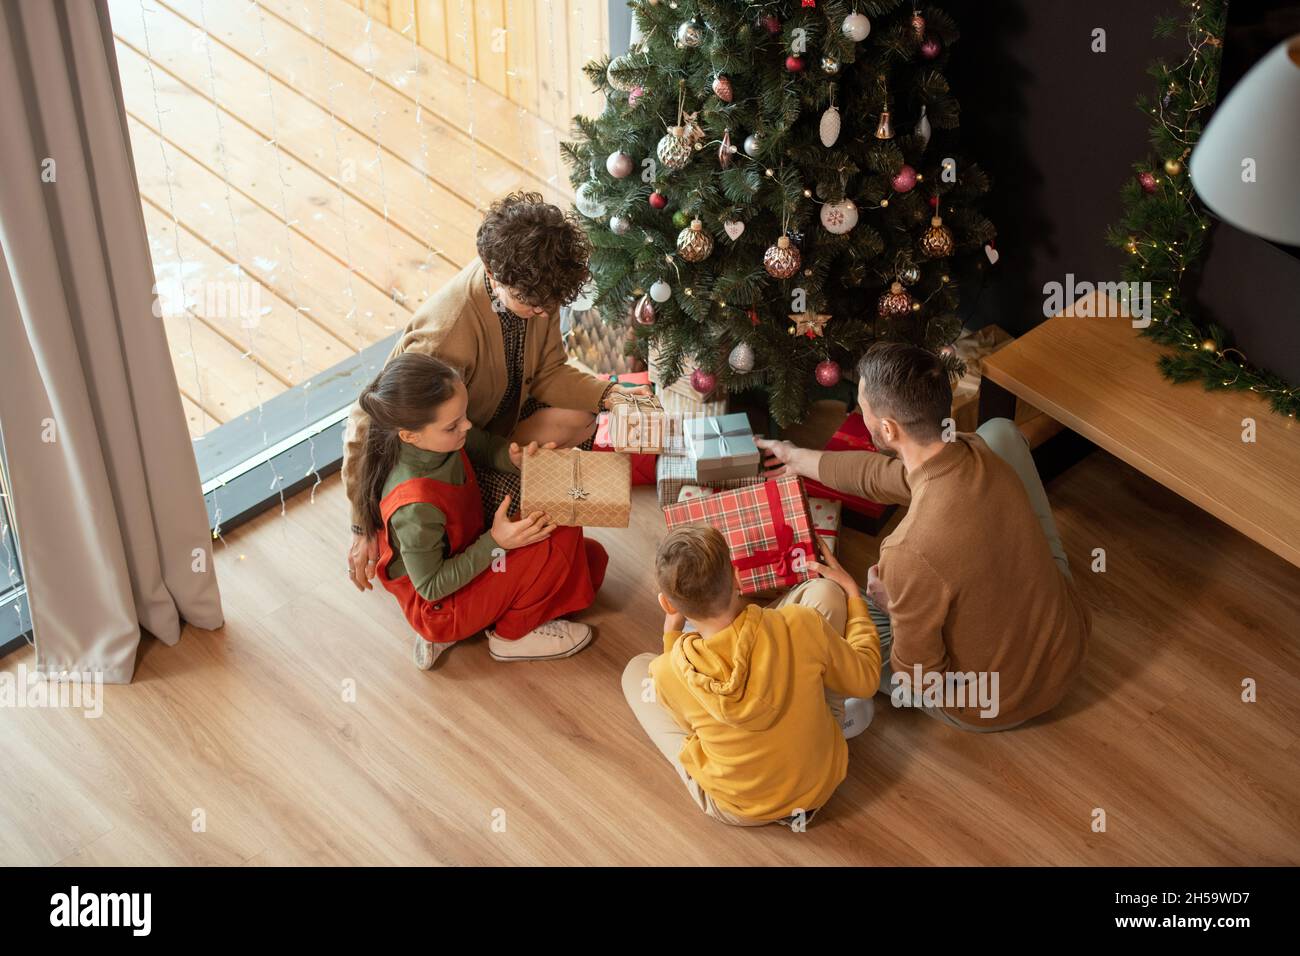 Direkt über der Ansicht der Familie mit zwei Kindern, die um den geschmückten Baum sitzen und am Weihnachtsmorgen Geschenke austauschen Stockfoto